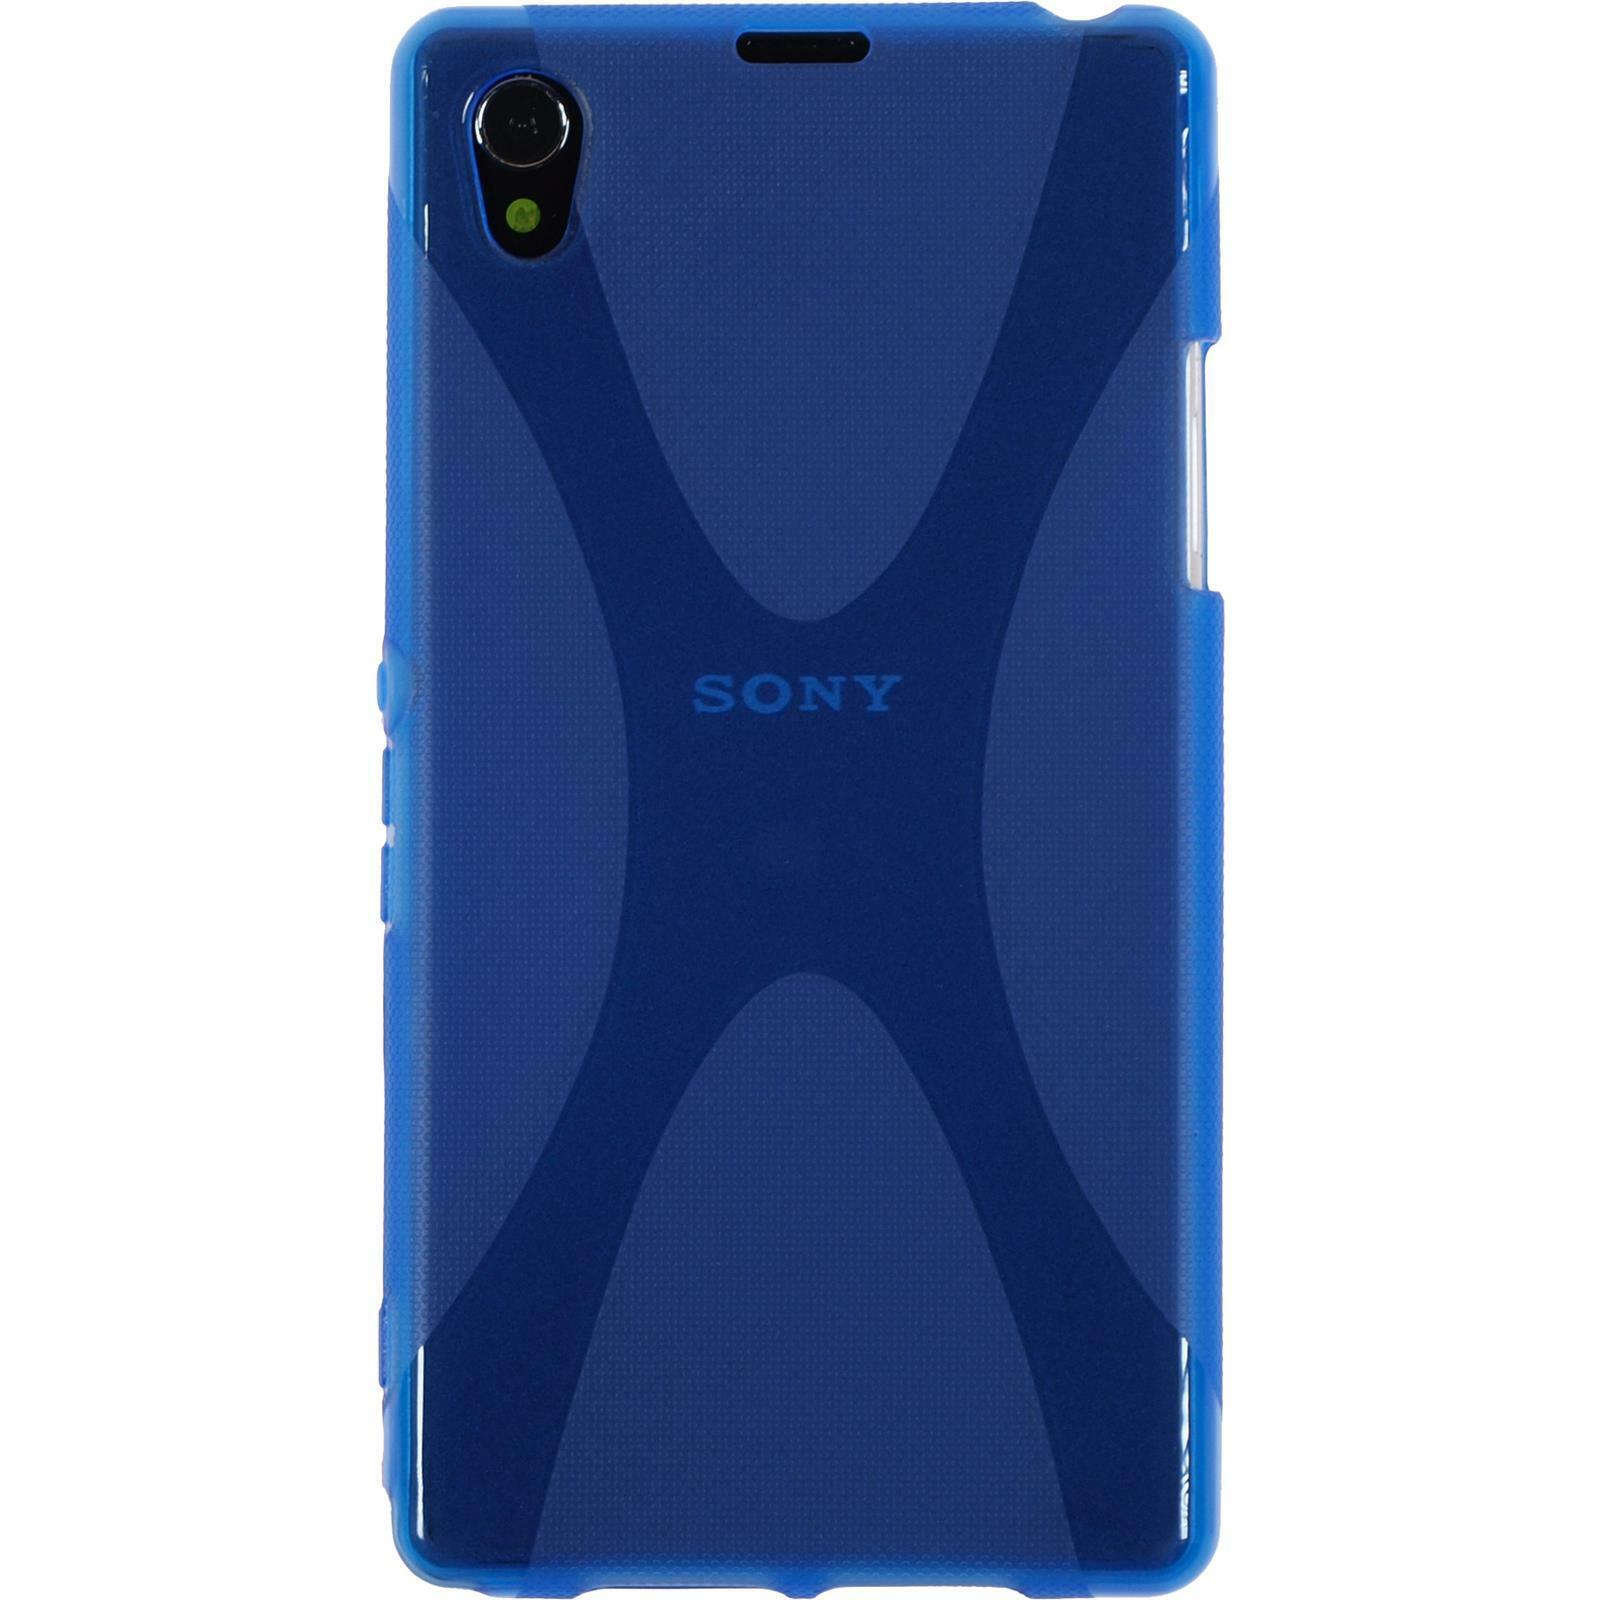 Silikon Hülle für Sony Xperia Z1 blau X-Style 2 Schutzfolien